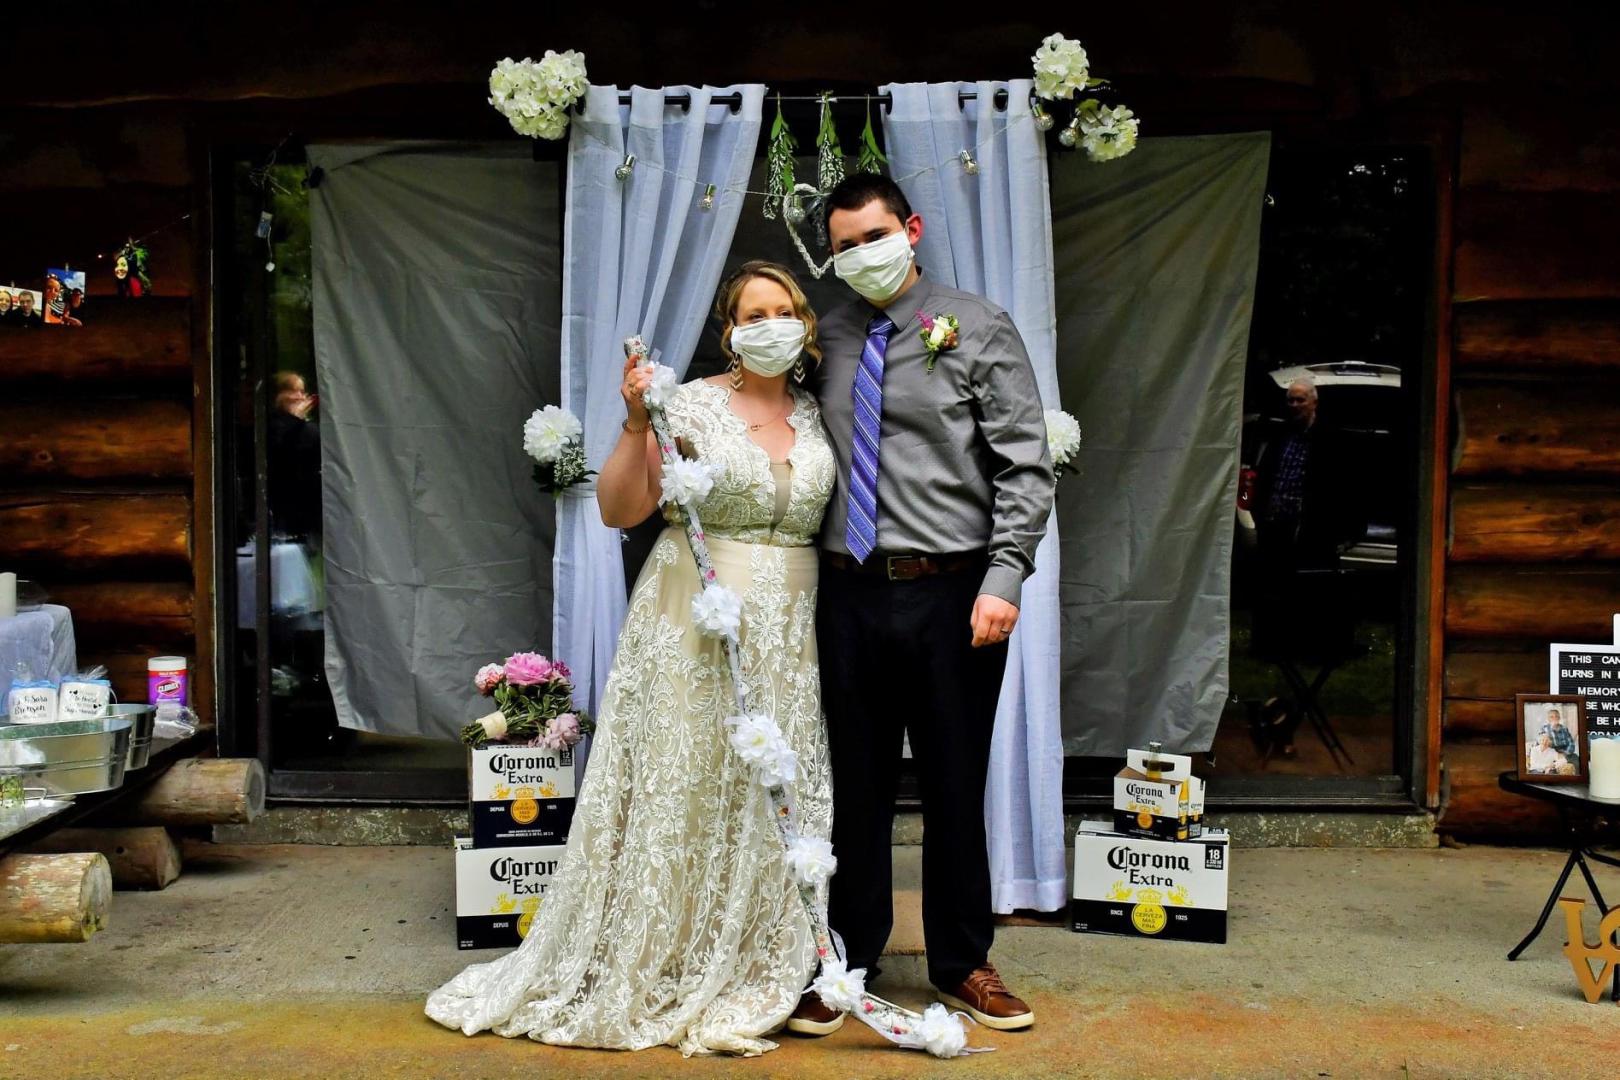 Image of woman and man at a wedding wearing cloth masks.